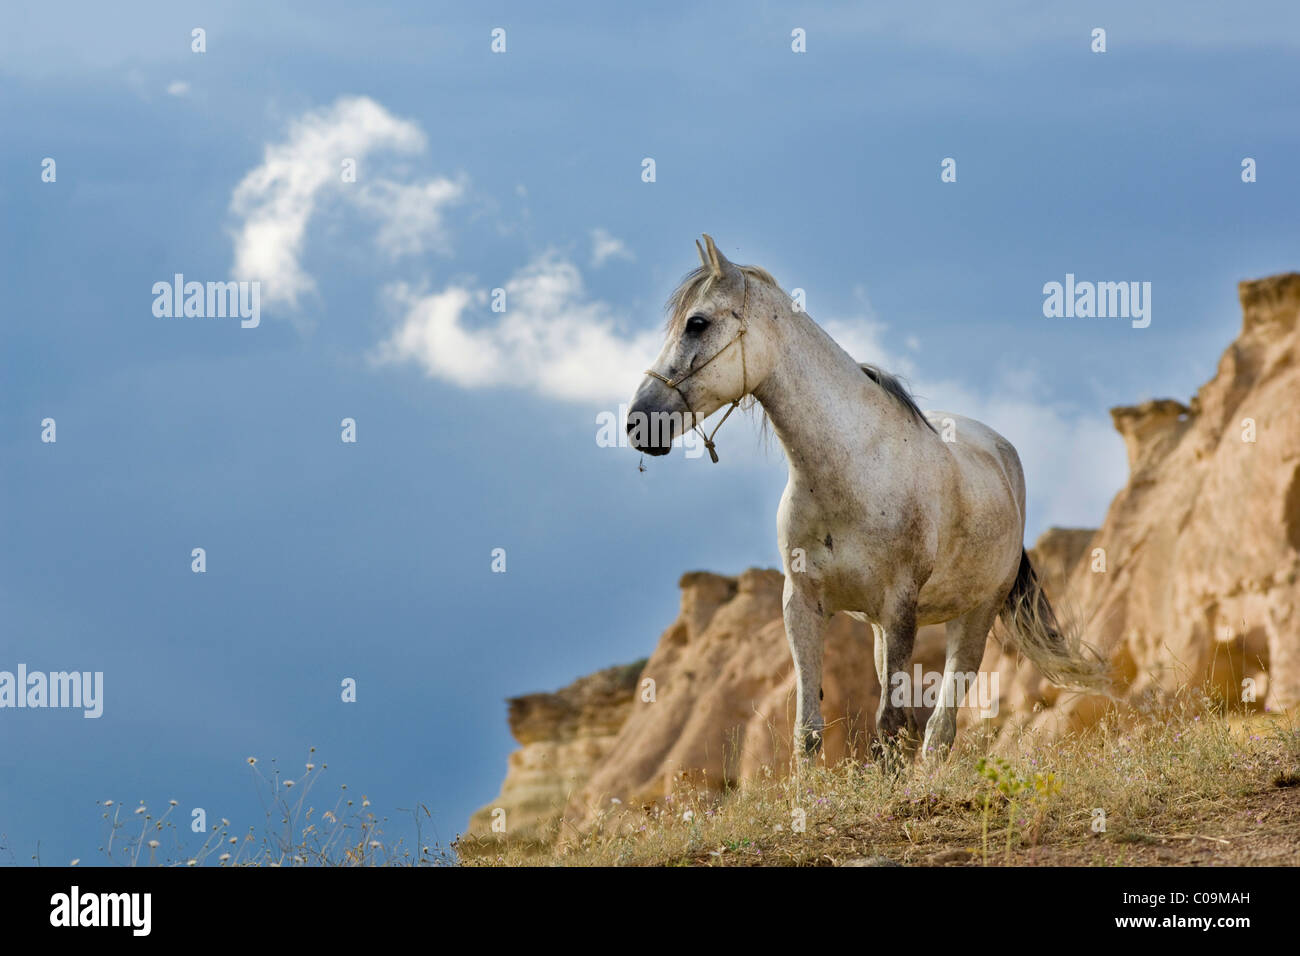 Il cavallo in atmosfera tempestoso nella parte anteriore del paesaggio di tufo, Cappadocia, Anatolia centrale, Turchia, Asia Foto Stock